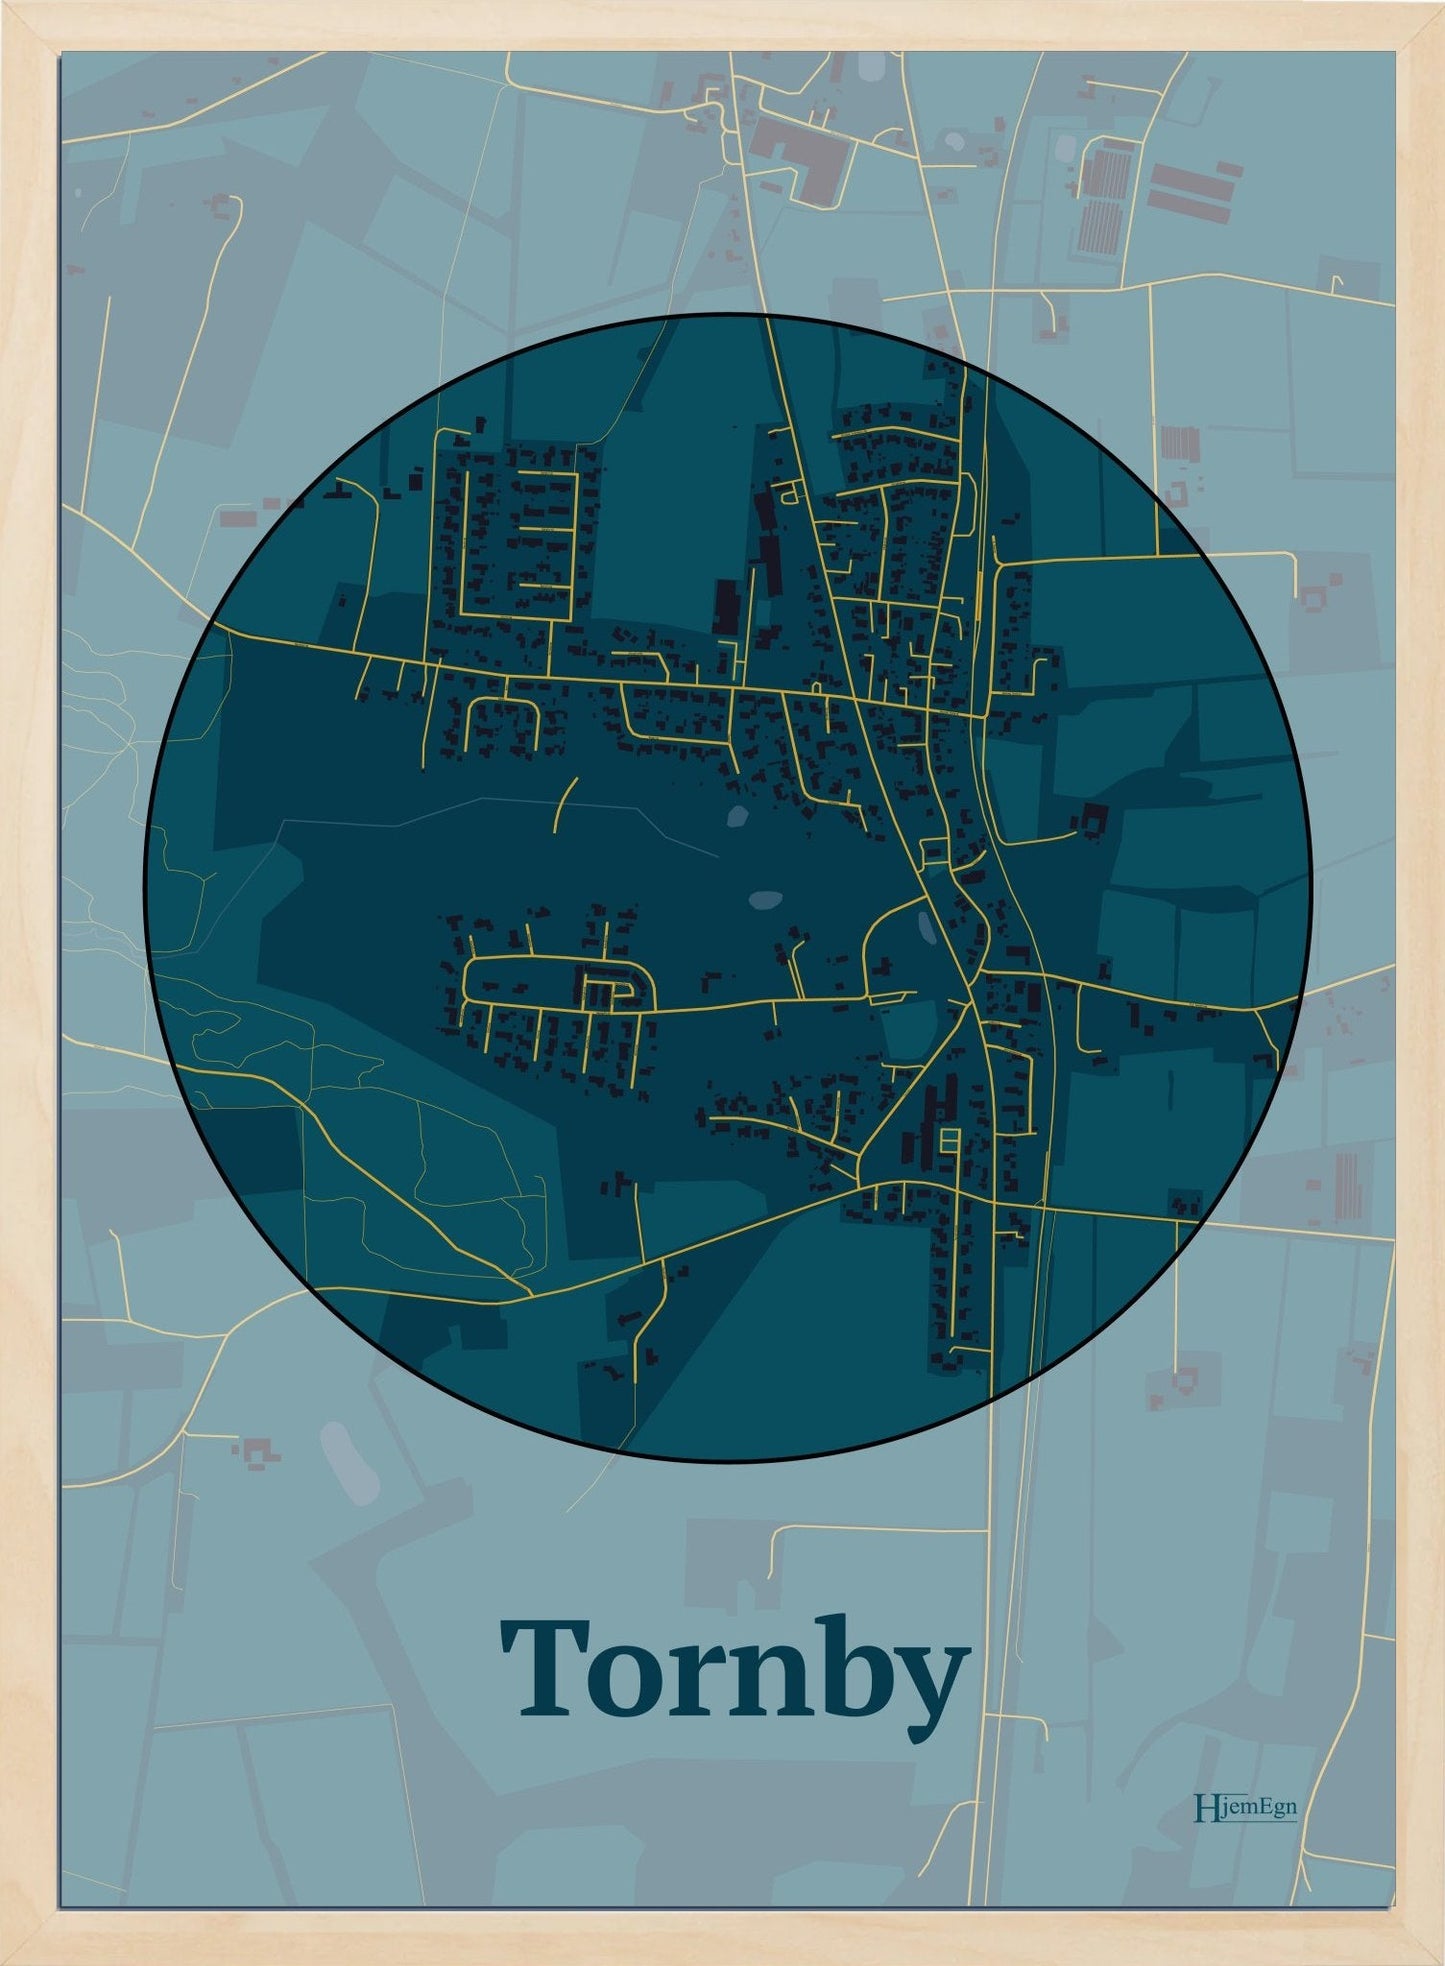 Tornby plakat i farve mørk blå og HjemEgn.dk design centrum. Design bykort for Tornby